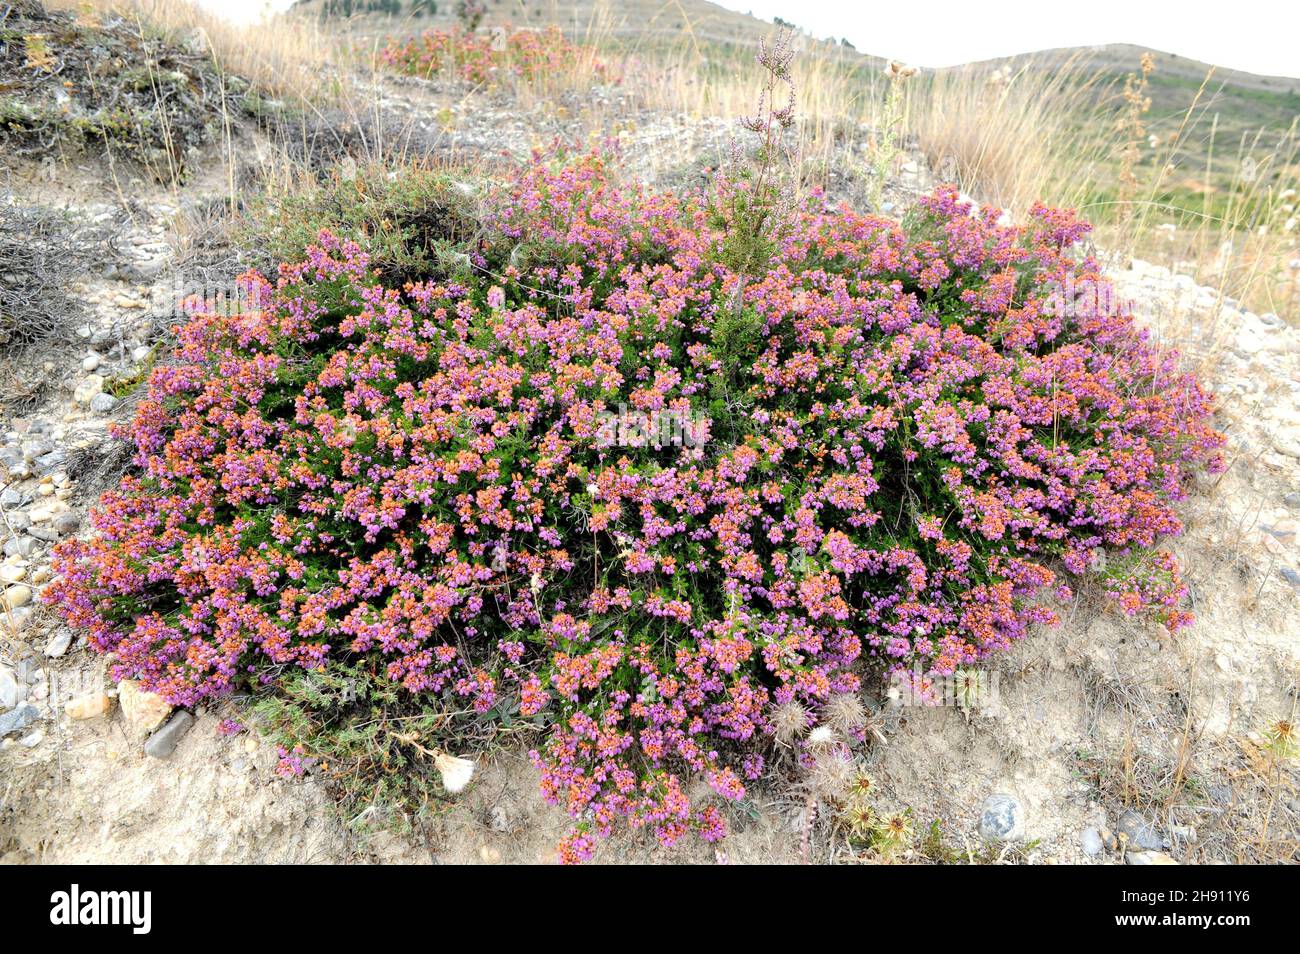 Cornish heath (Erica vagans) es un subarbusto nativo de Europa occidental. Esta foto fue tomada en Burgos, Castilla y León, España. Foto de stock